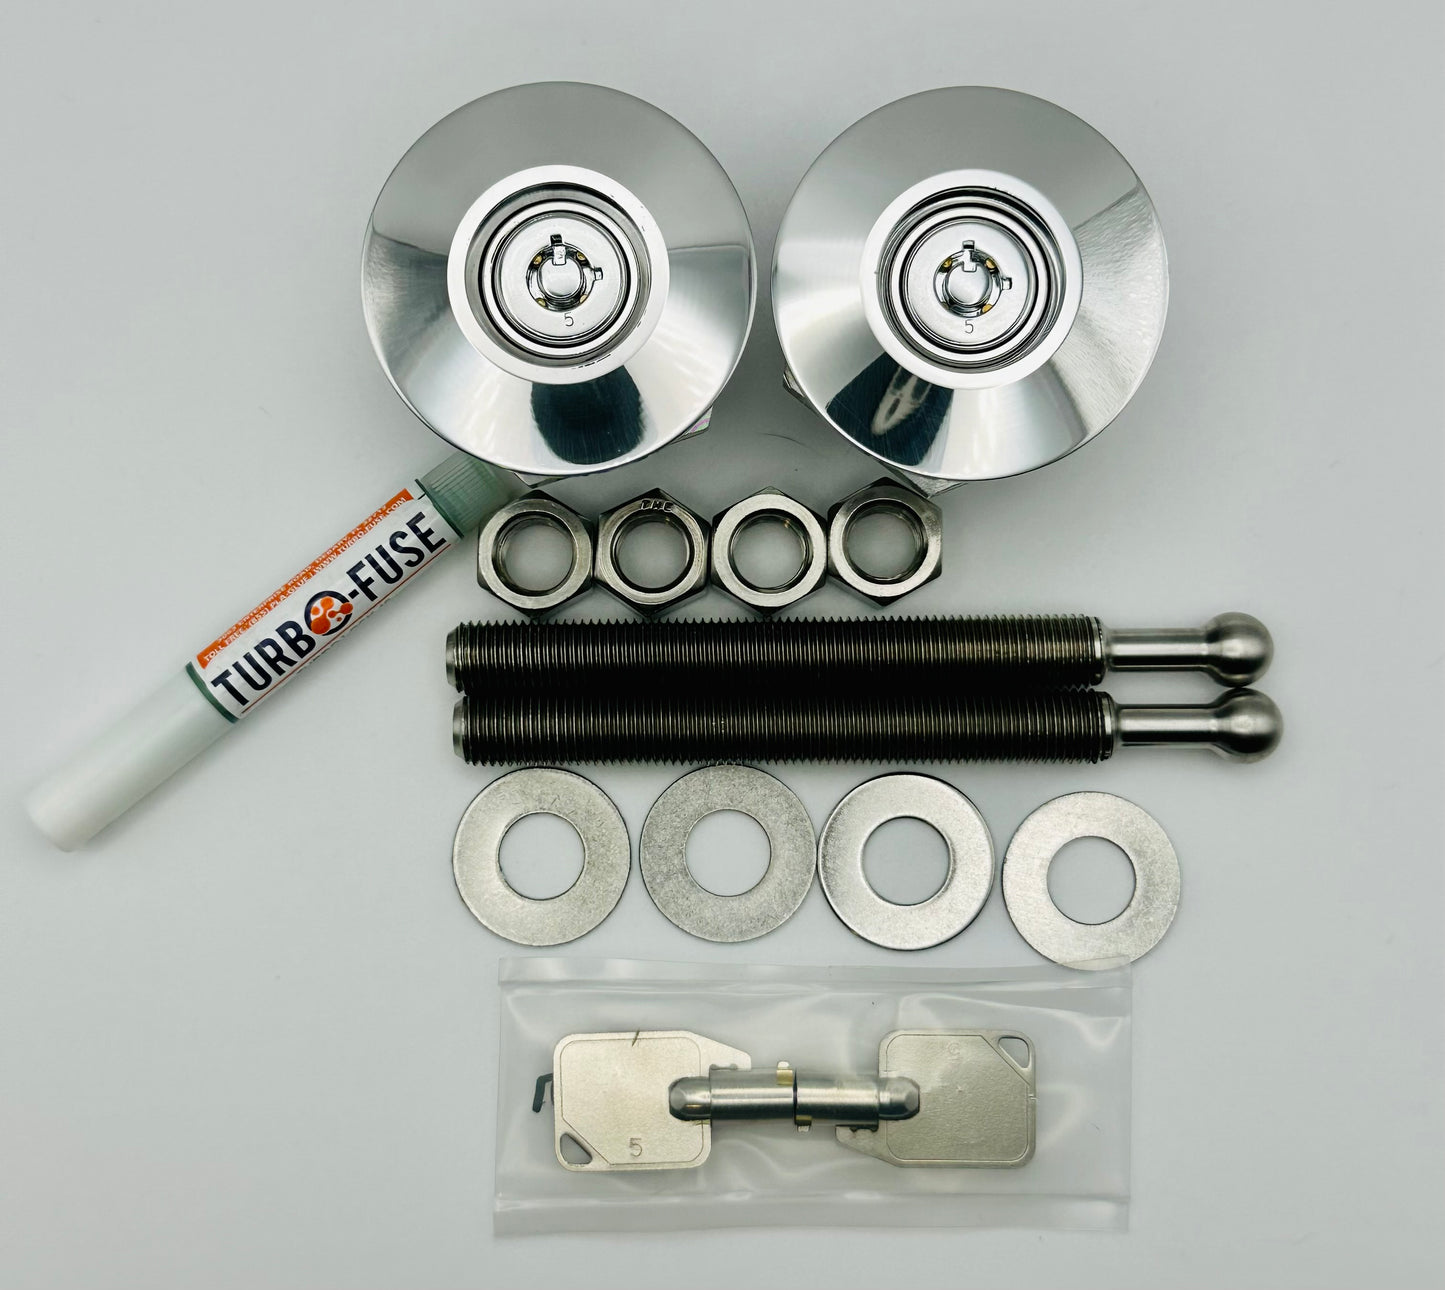 QL-38 Series Lockable Hood Pin Kits